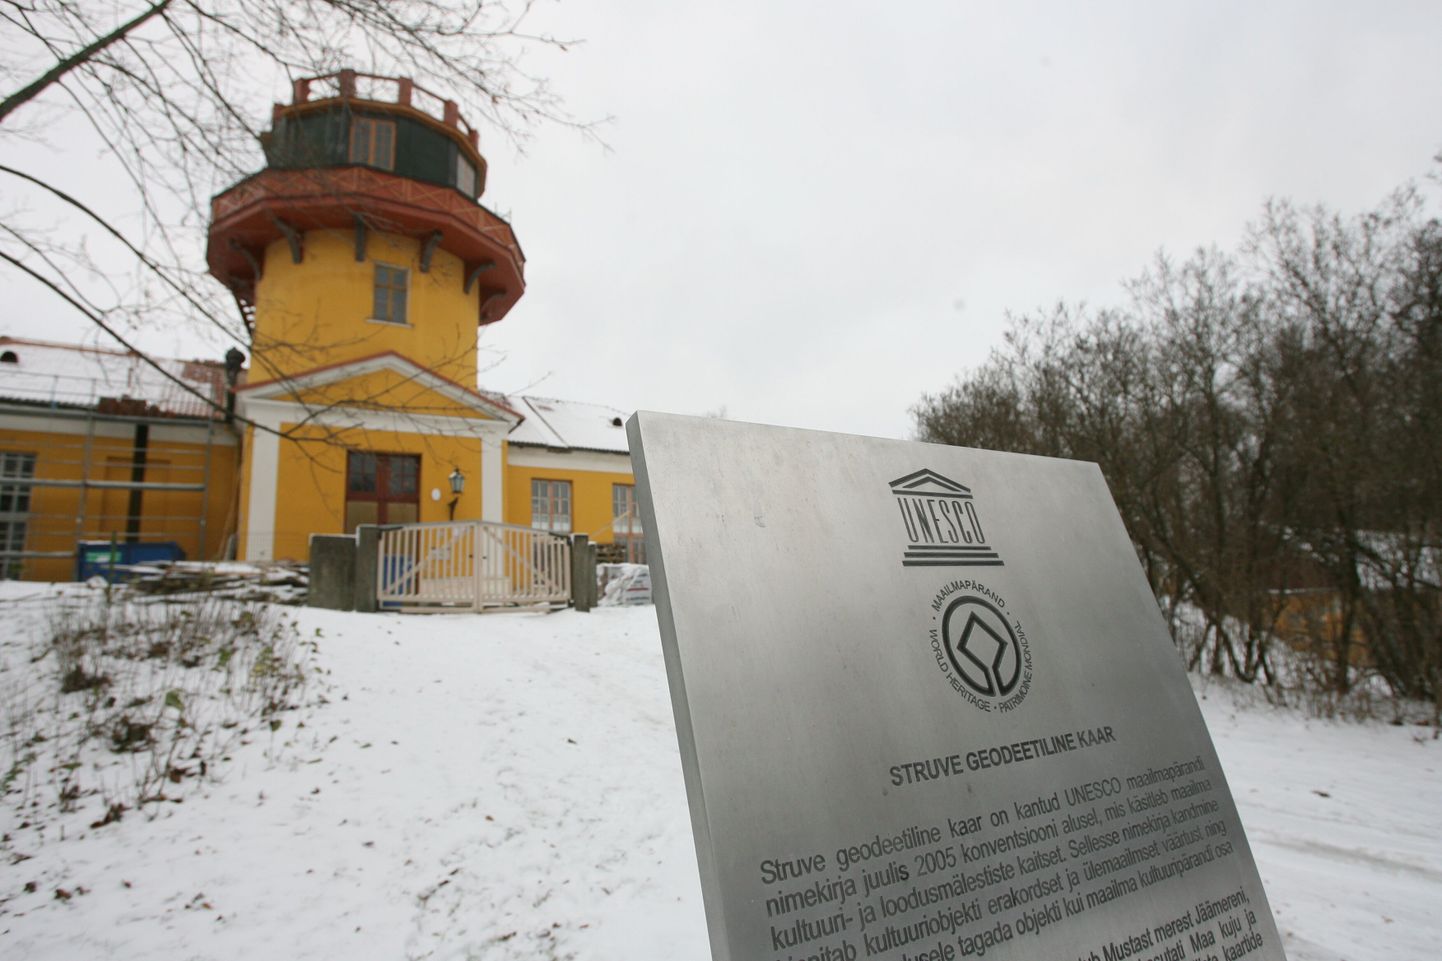 Tähetorn kuulub Tartu Ülikooli täheteadlase F.G.W. Struve geodeetilise kaare osana Unesco maailmapärandi nimekirja.